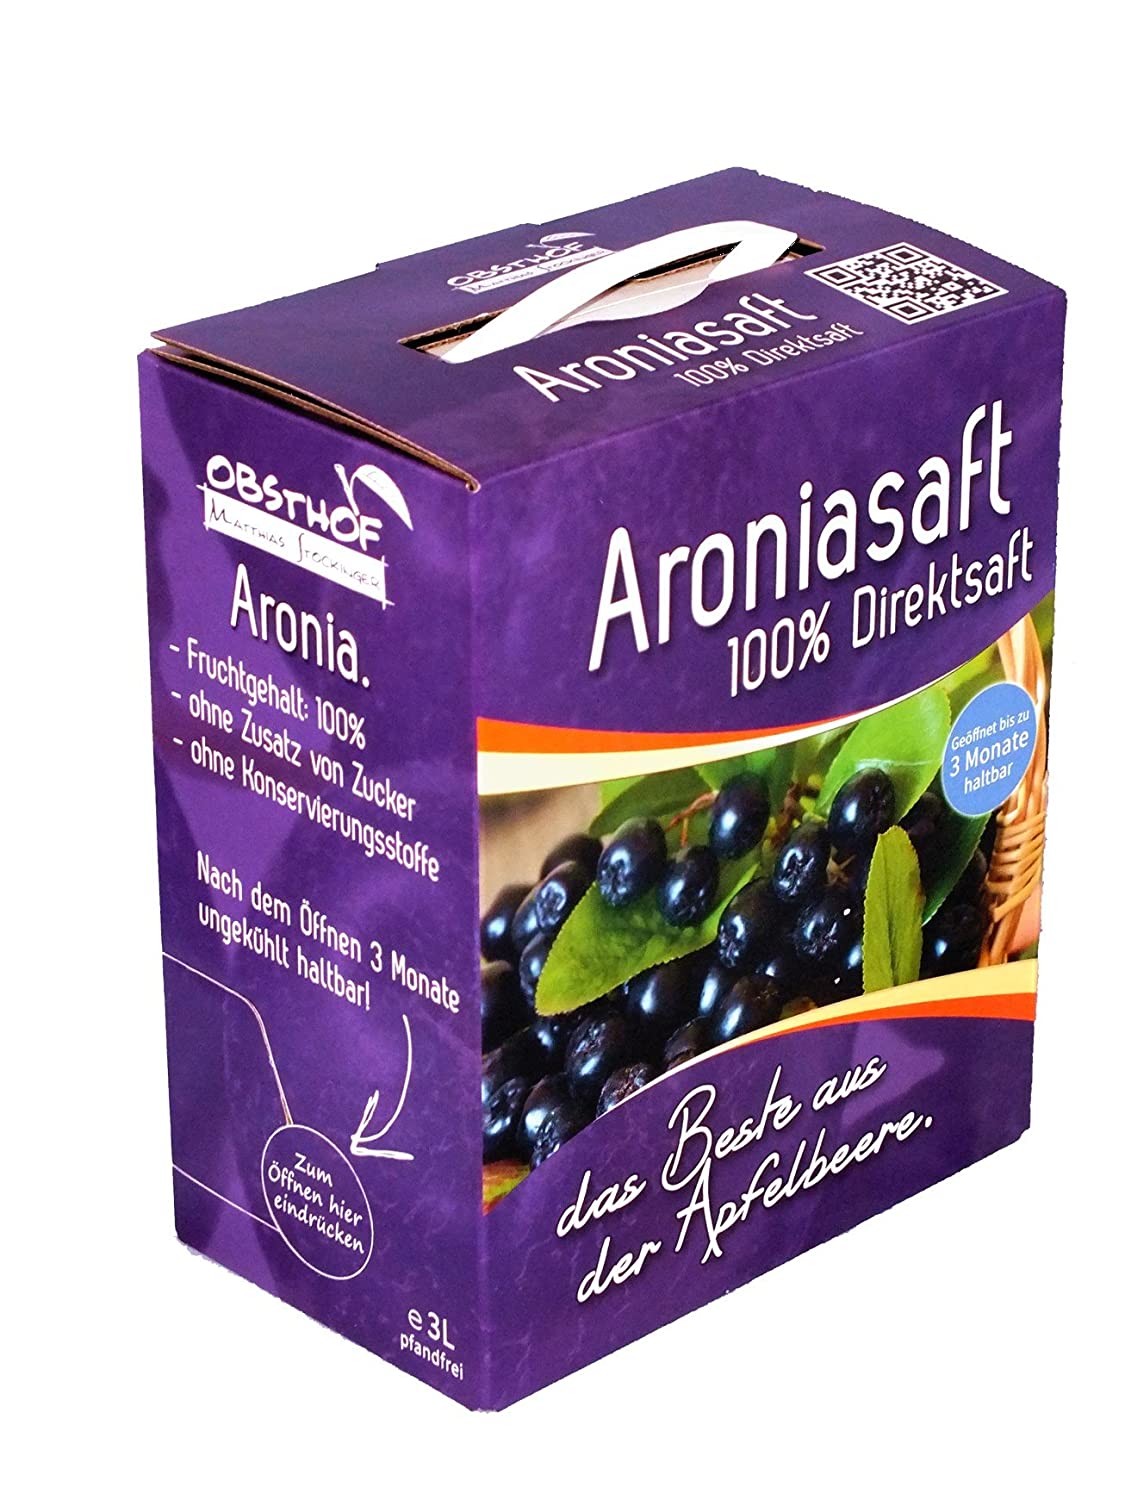 Aronia Muttersaft, 3 Liter Bag in Box, Aroniasaft